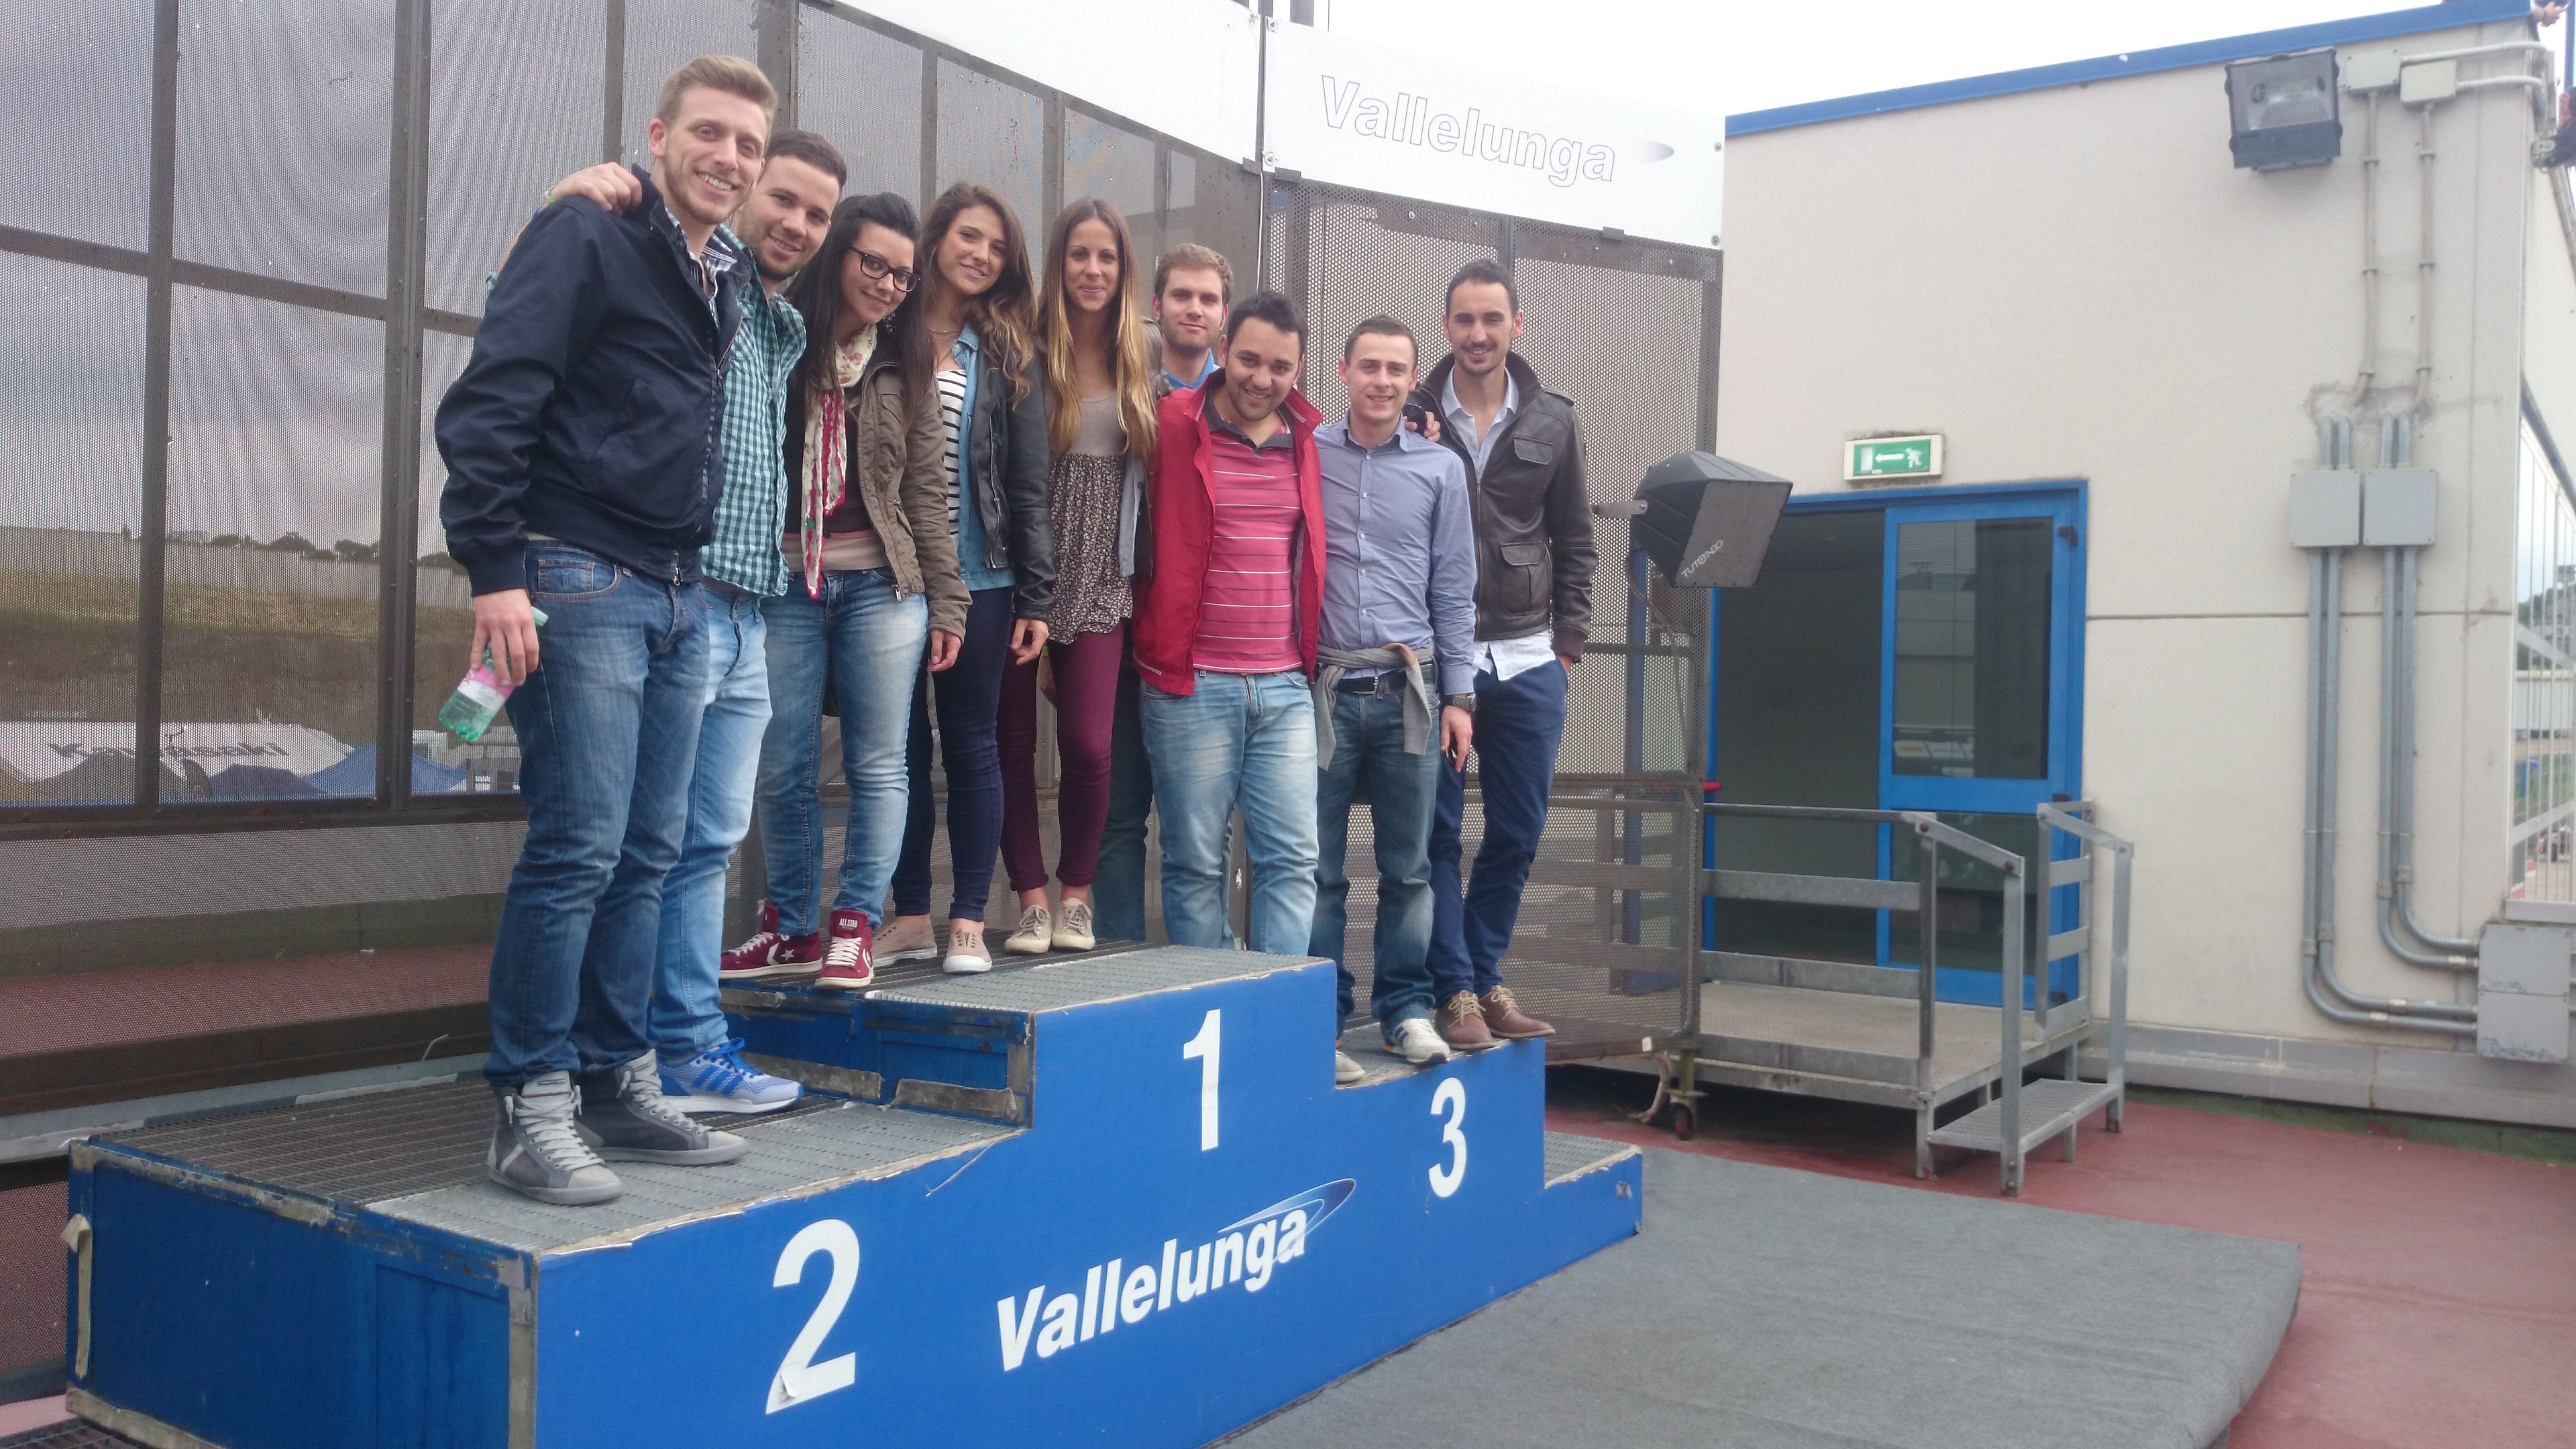 Studenti 2014 sul podio  di Vallelunga